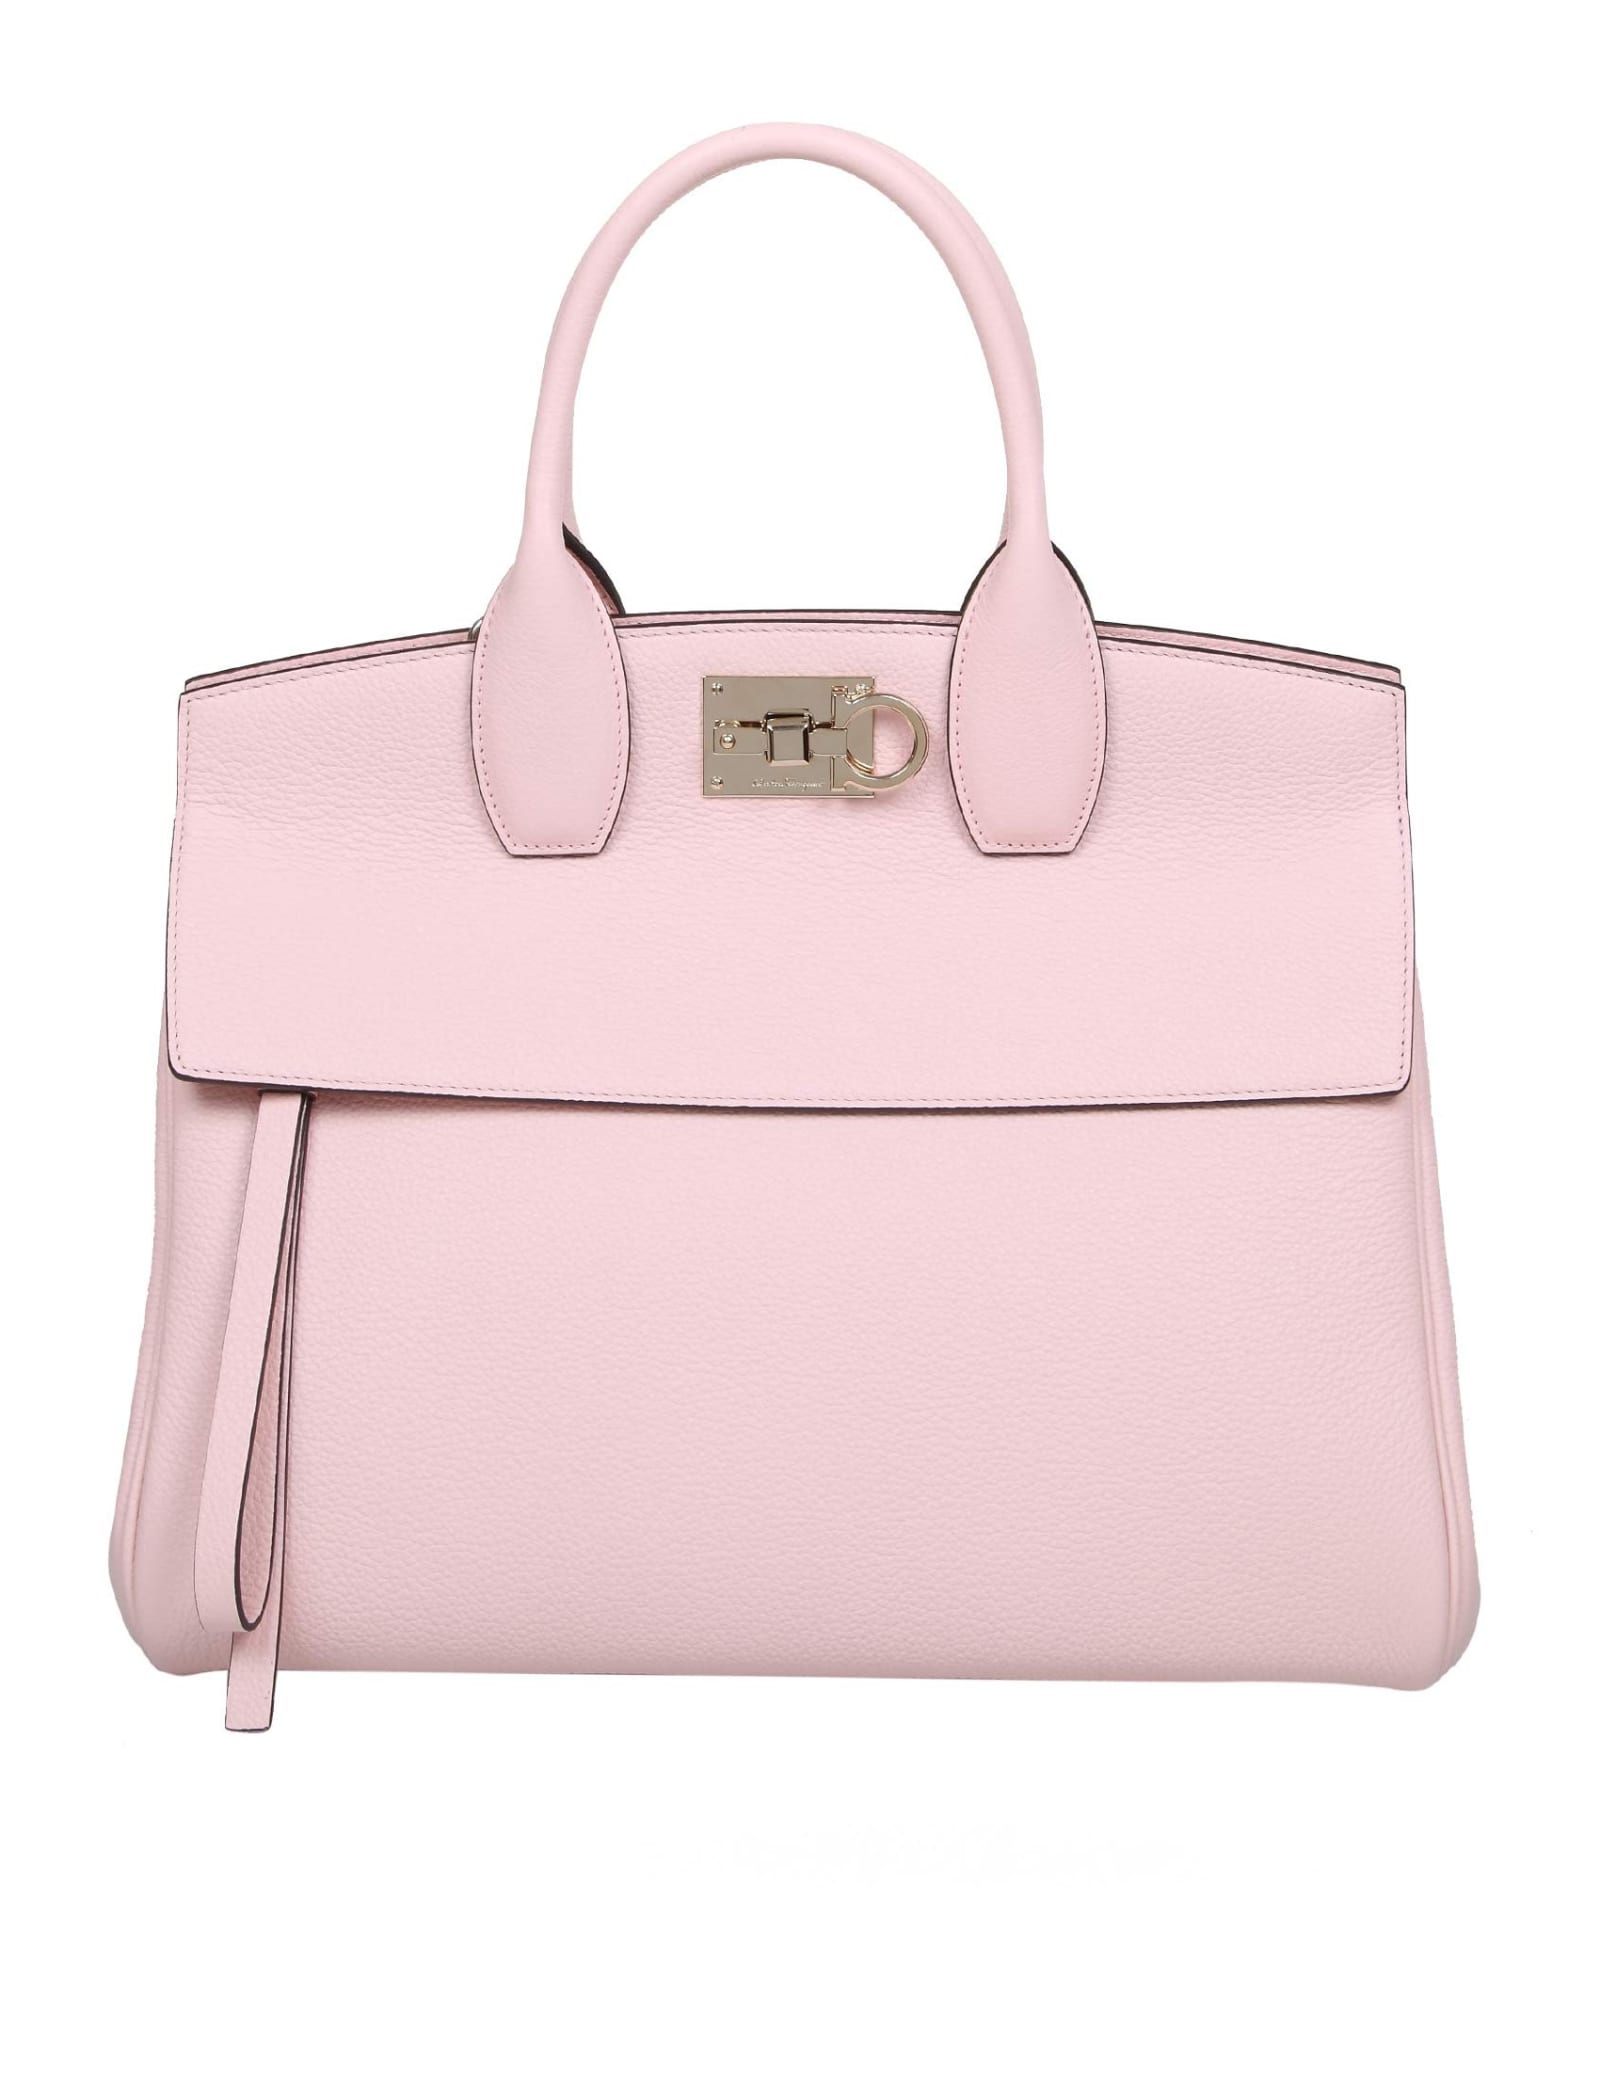 Salvatore Ferragamo Medium Studio Bag In Pink Leather